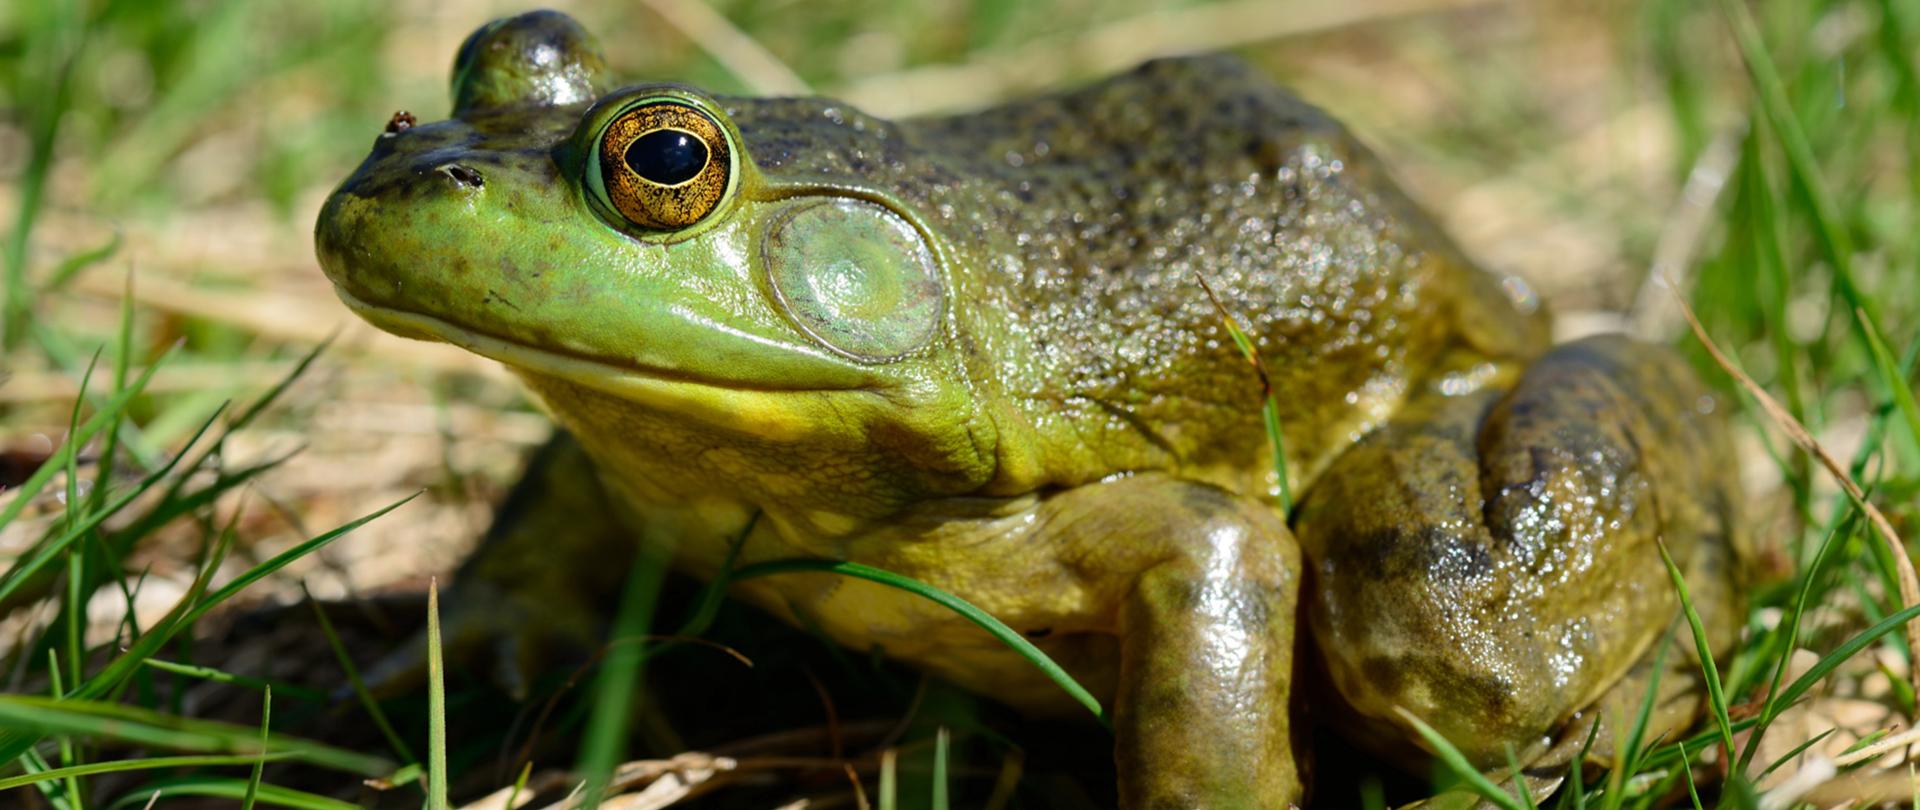 Na trawie stoi żaba rycząca o o oliwkowym ciele i jaśniejszej głowie, bardzo dobrze widoczne oczy w kolorze złotym.